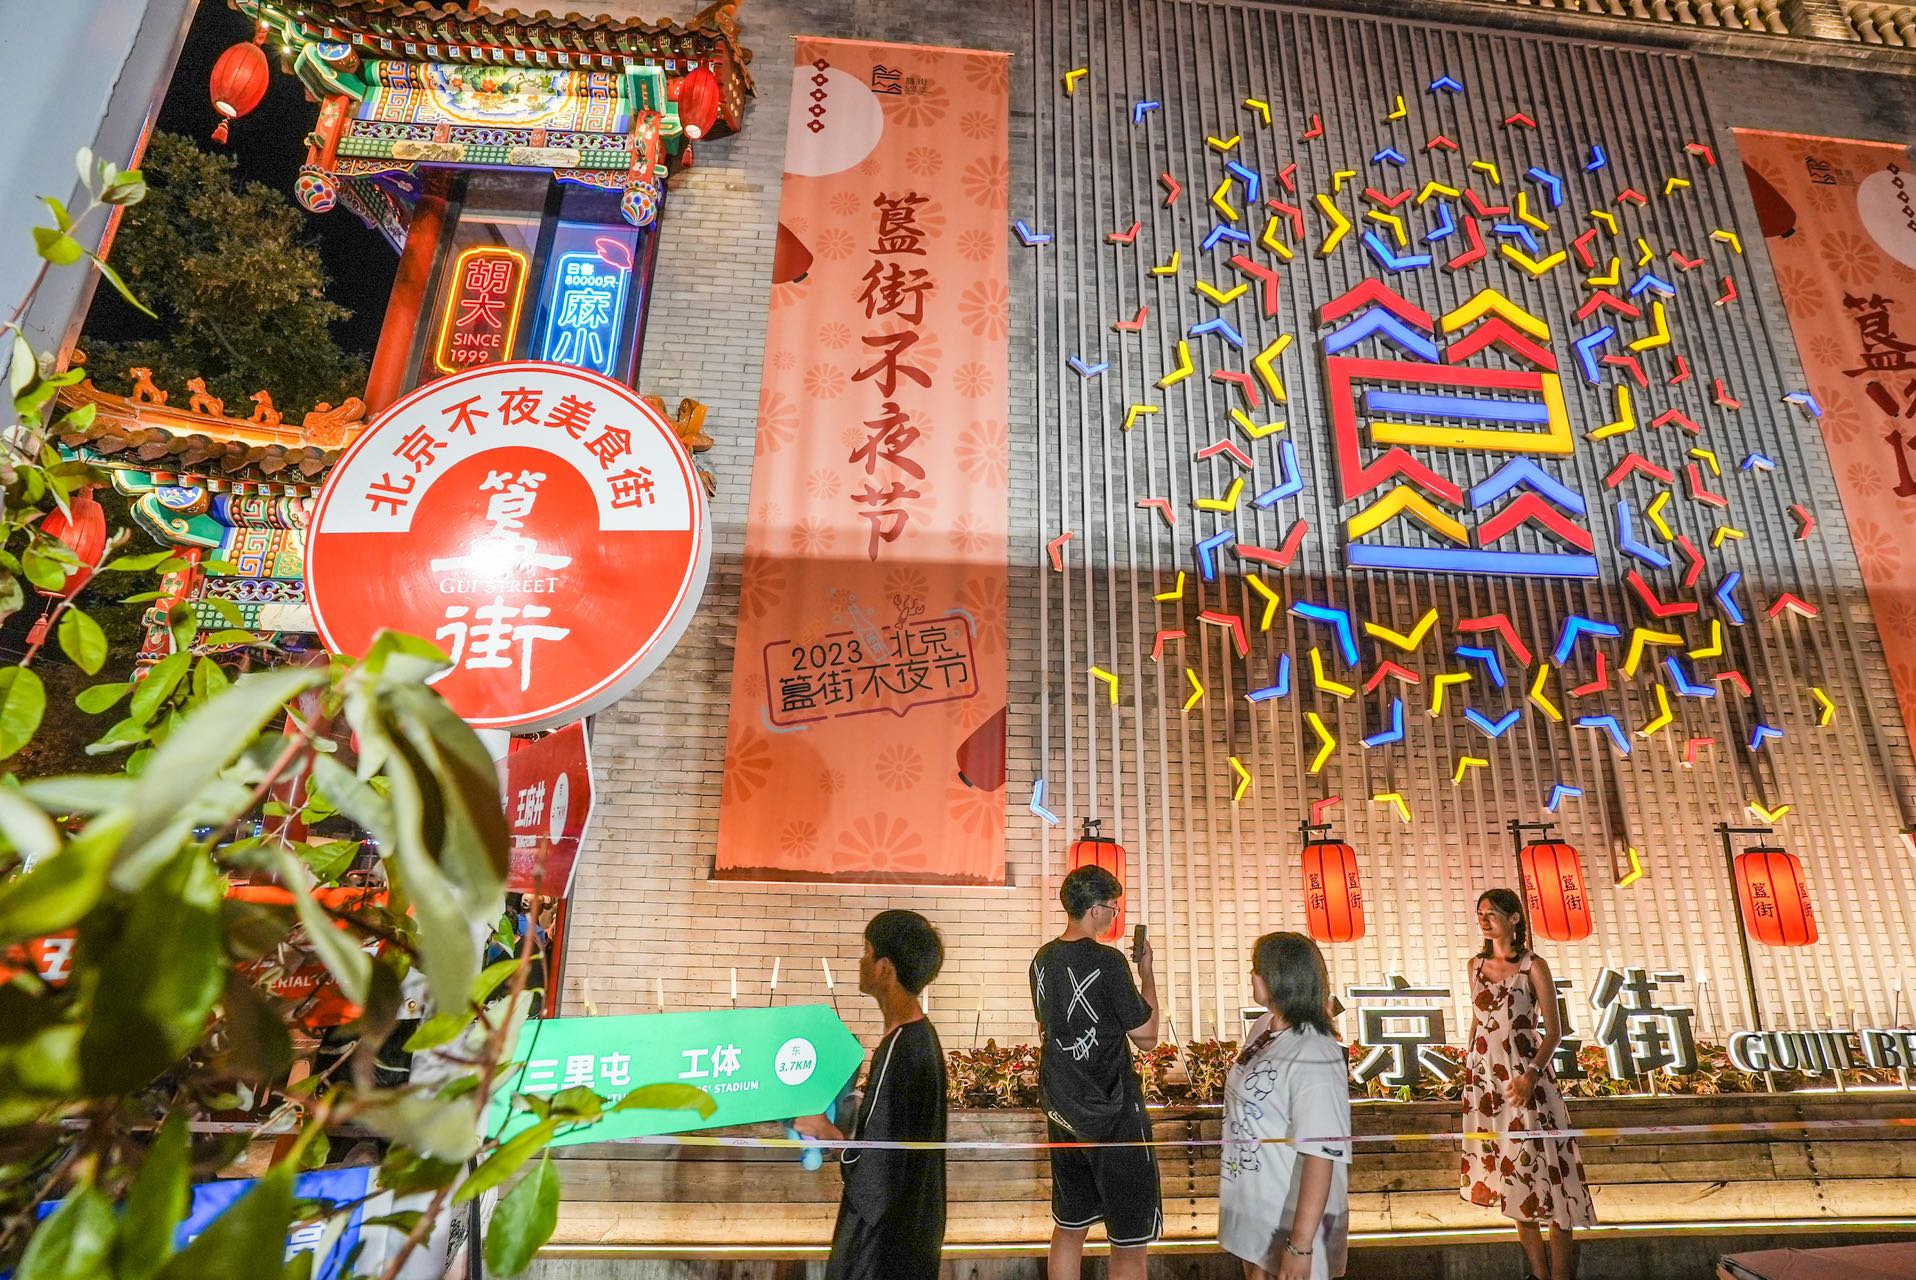 【携程攻略】景点,北京著名的小吃街，胡大饭店可谓网红饭店，排号300，真火啊，簋街仔…